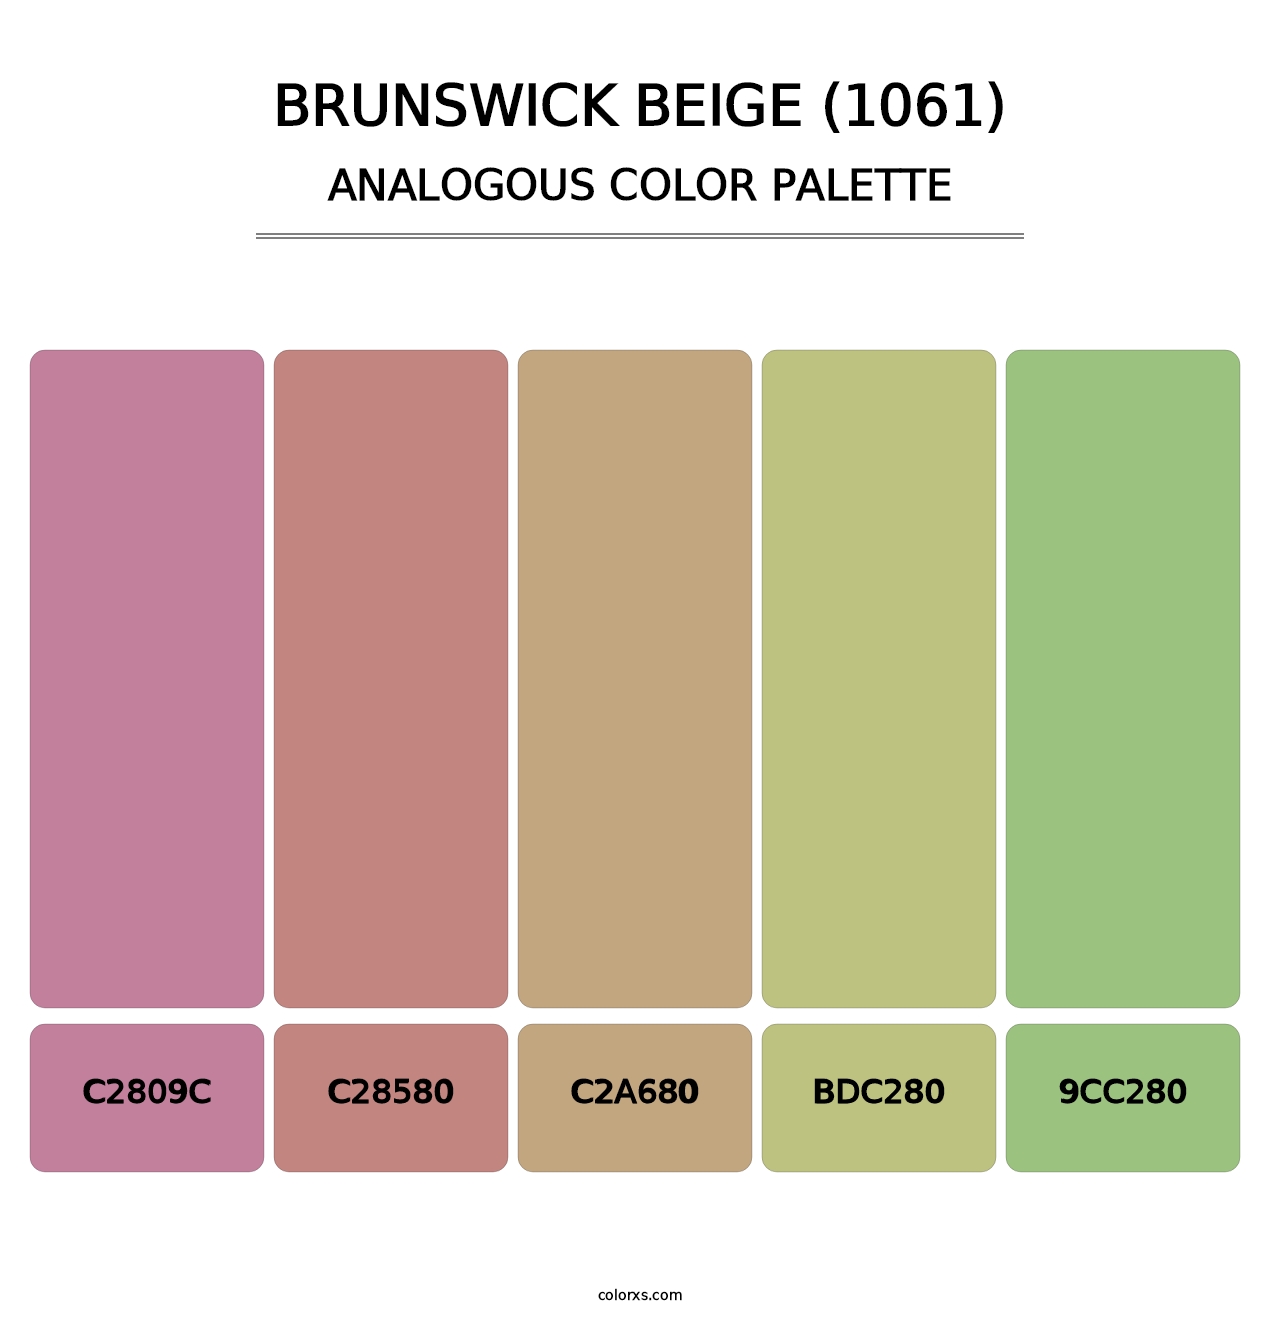 Brunswick Beige (1061) - Analogous Color Palette